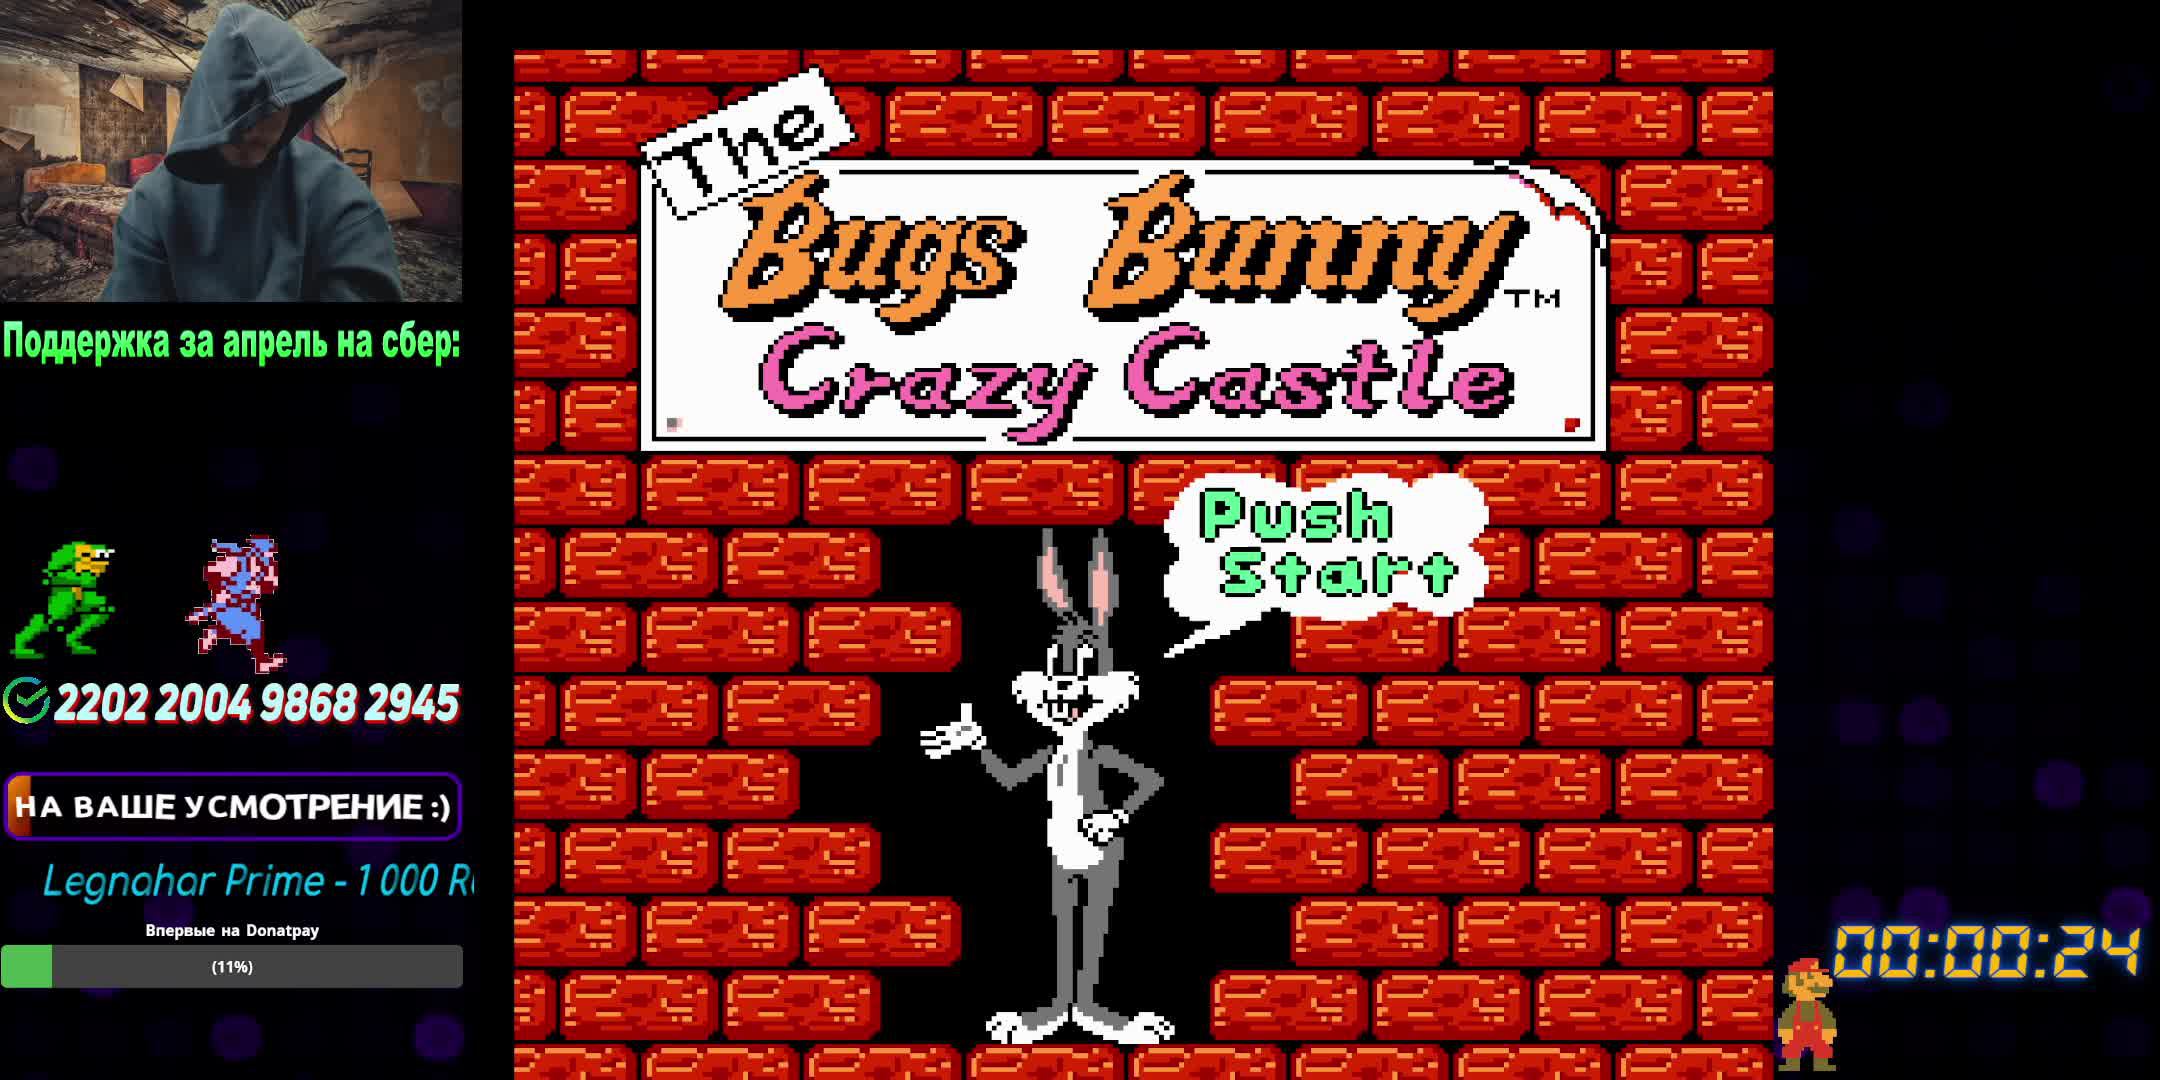 Bugs Bunny Crazy Castle - (NES / Dendy) - реквест от никораева.